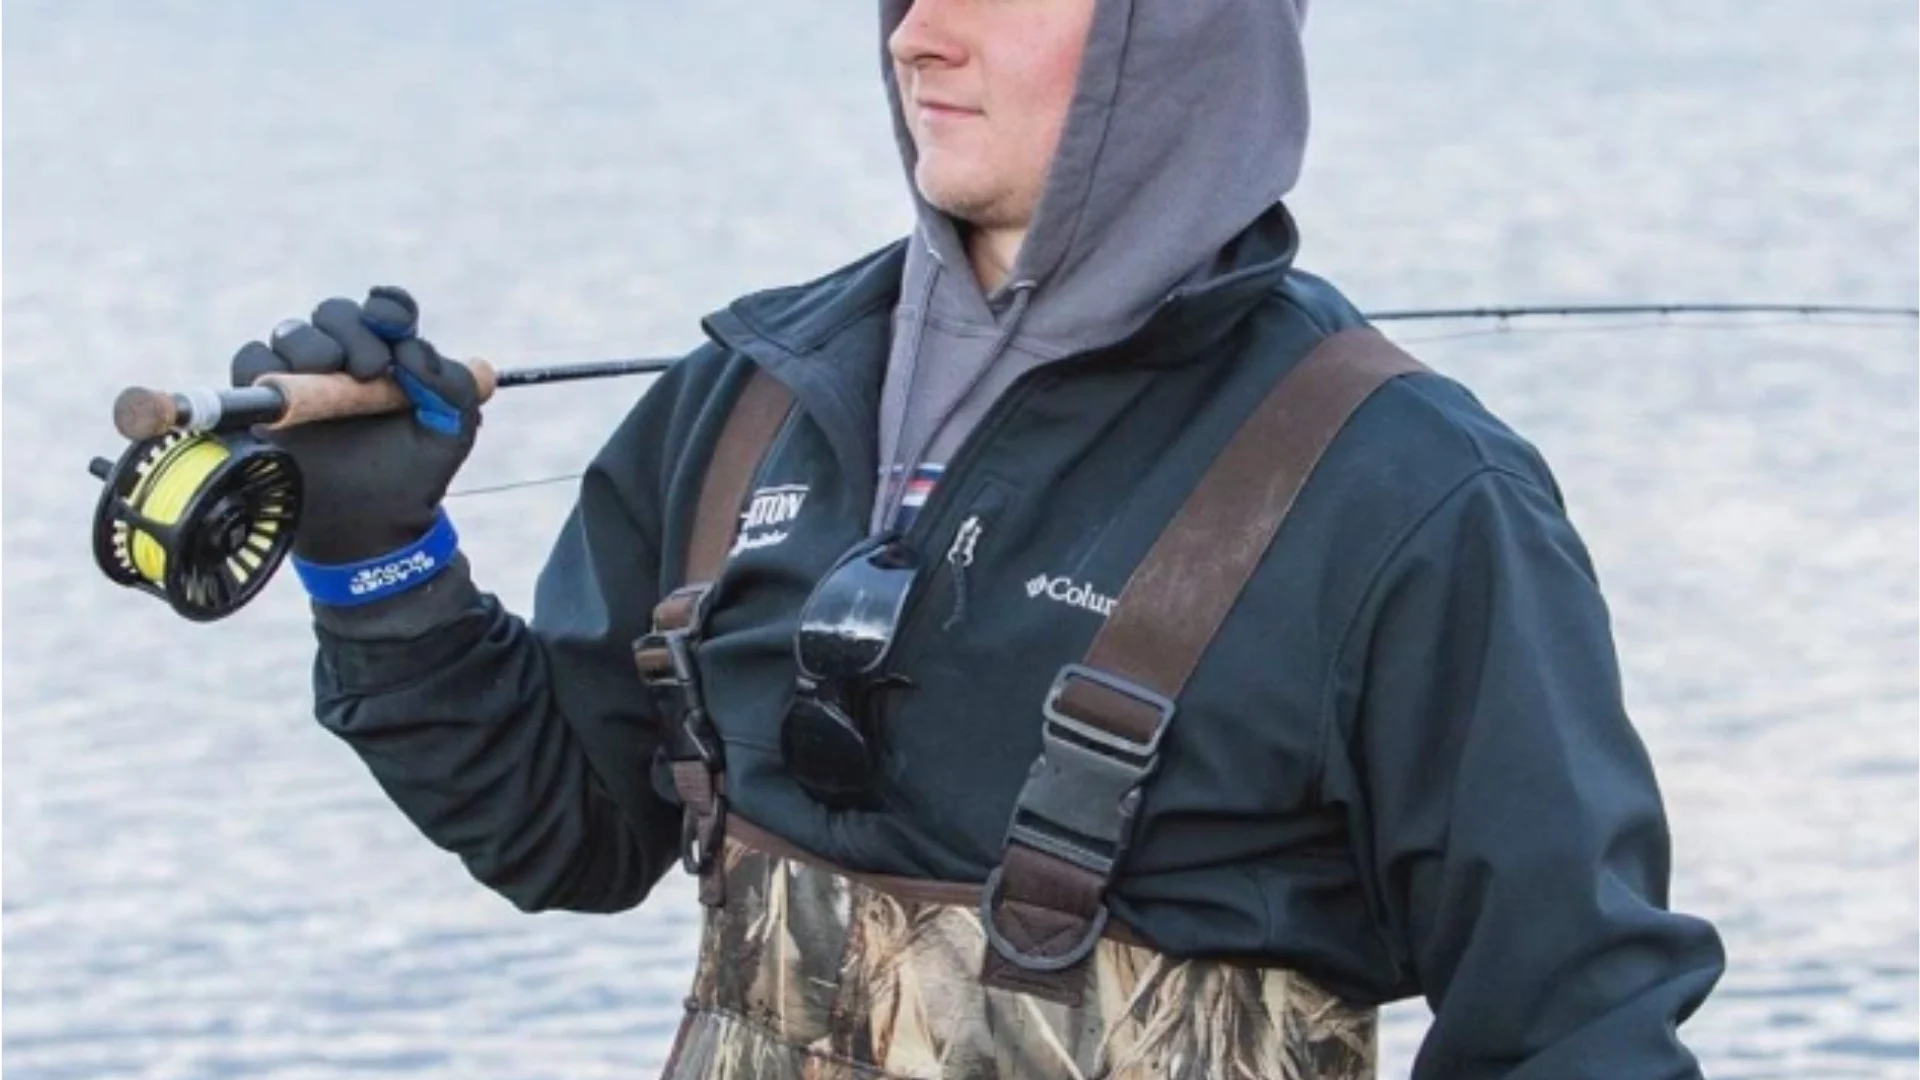 Glacier Glove Waterproof Slit Finger Pro Angler Gloves